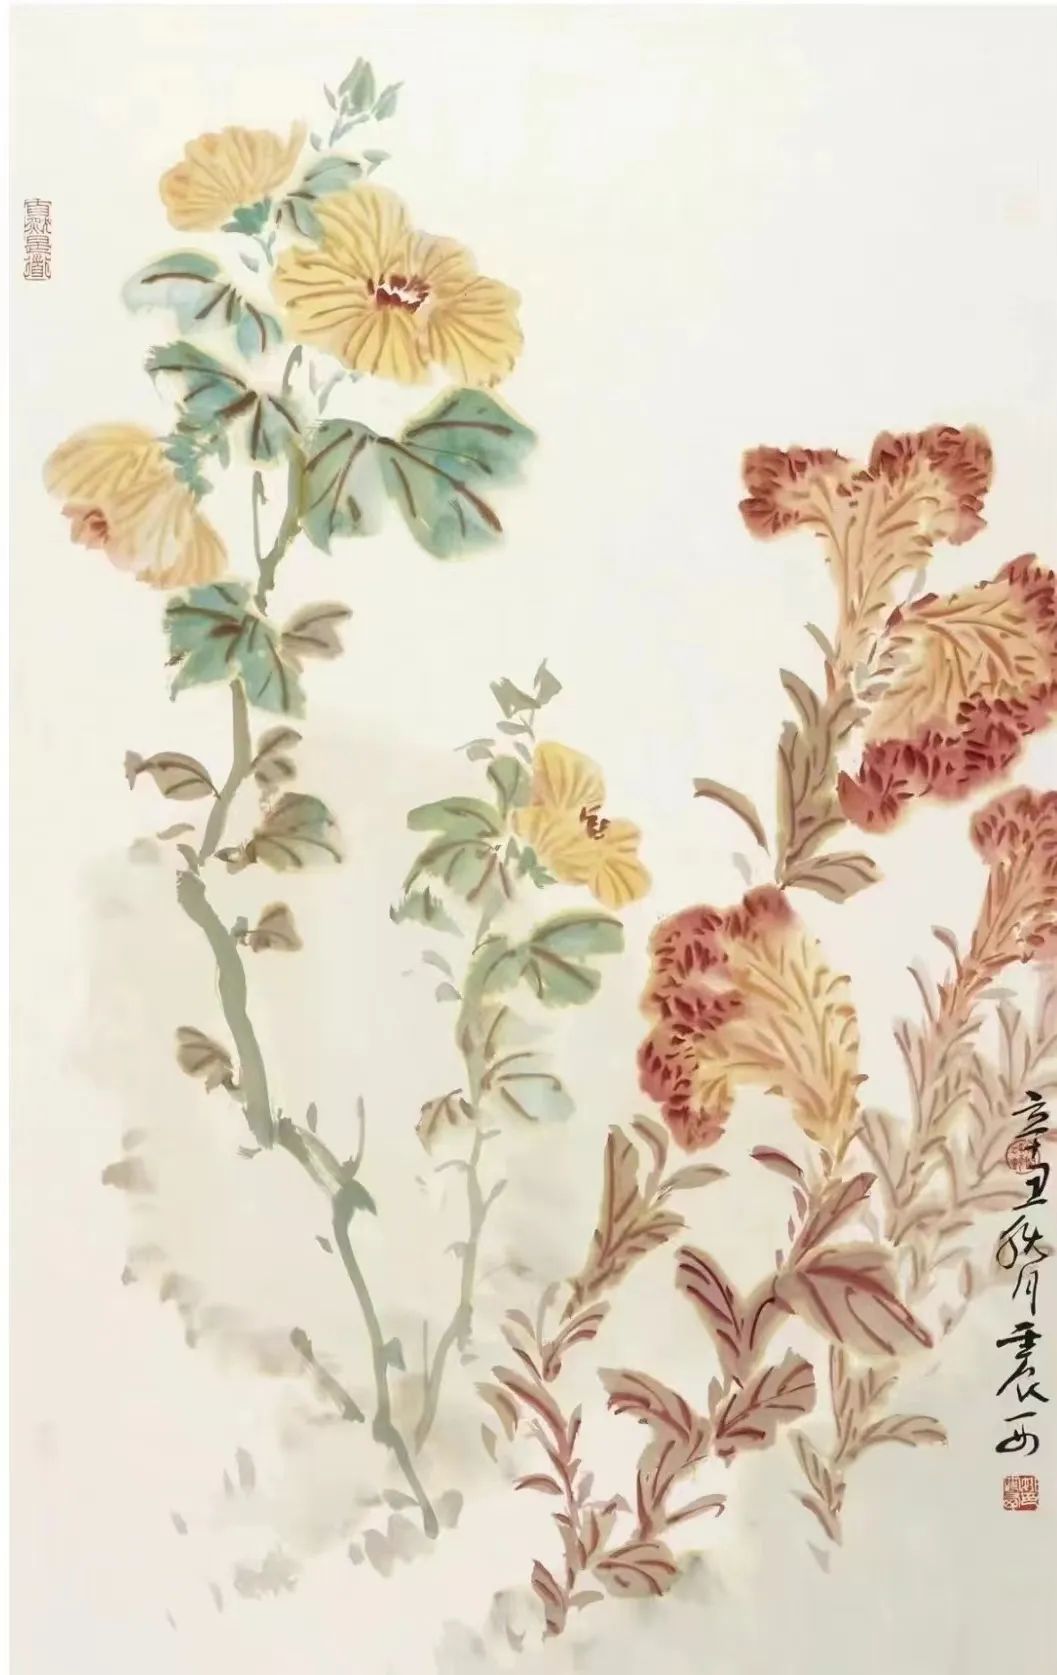 “岁寒三友——莫晓松、姚震西、李雪松中秋雅集”将于9月29日在北京丝路博雅书画院开展